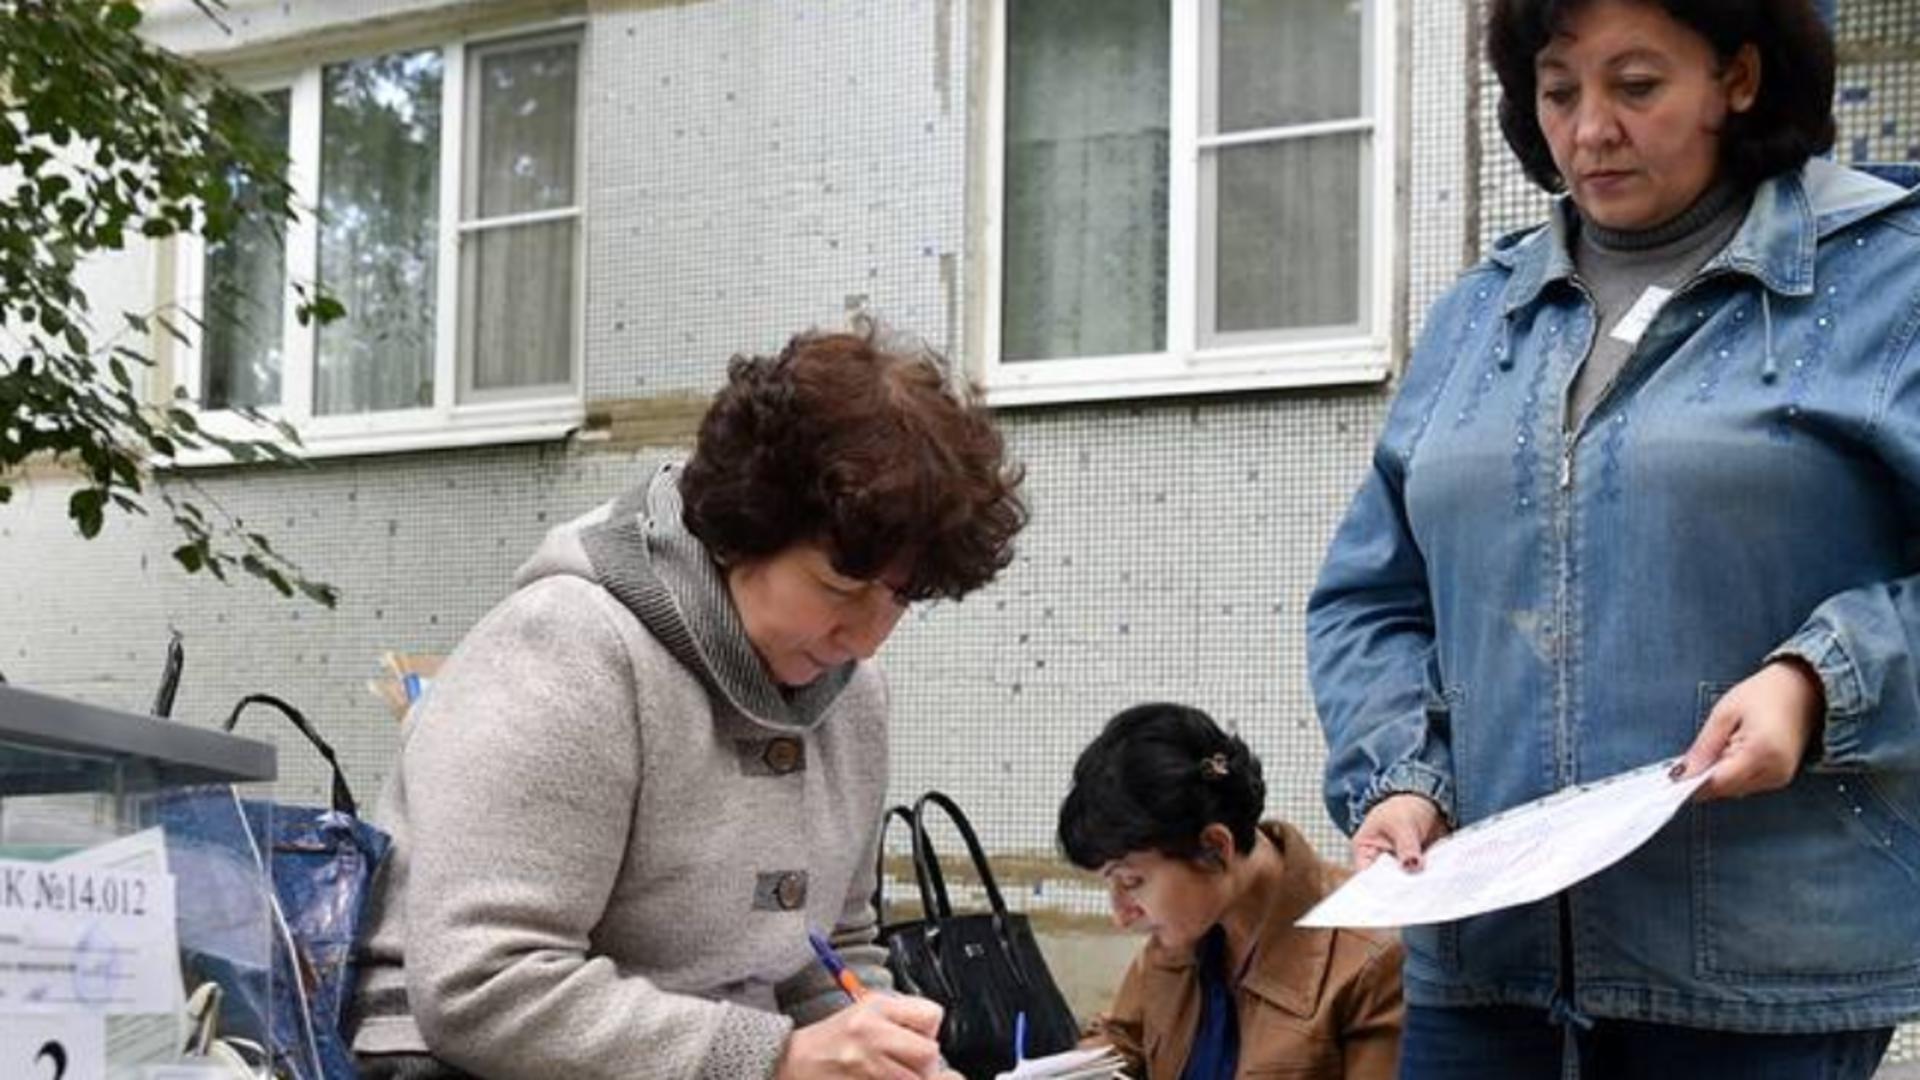 Război Ucraina. Referendumurile „false” din Donețk, Lugansk și Zaporojie pentru alipirea la Rusia Foto: TASS